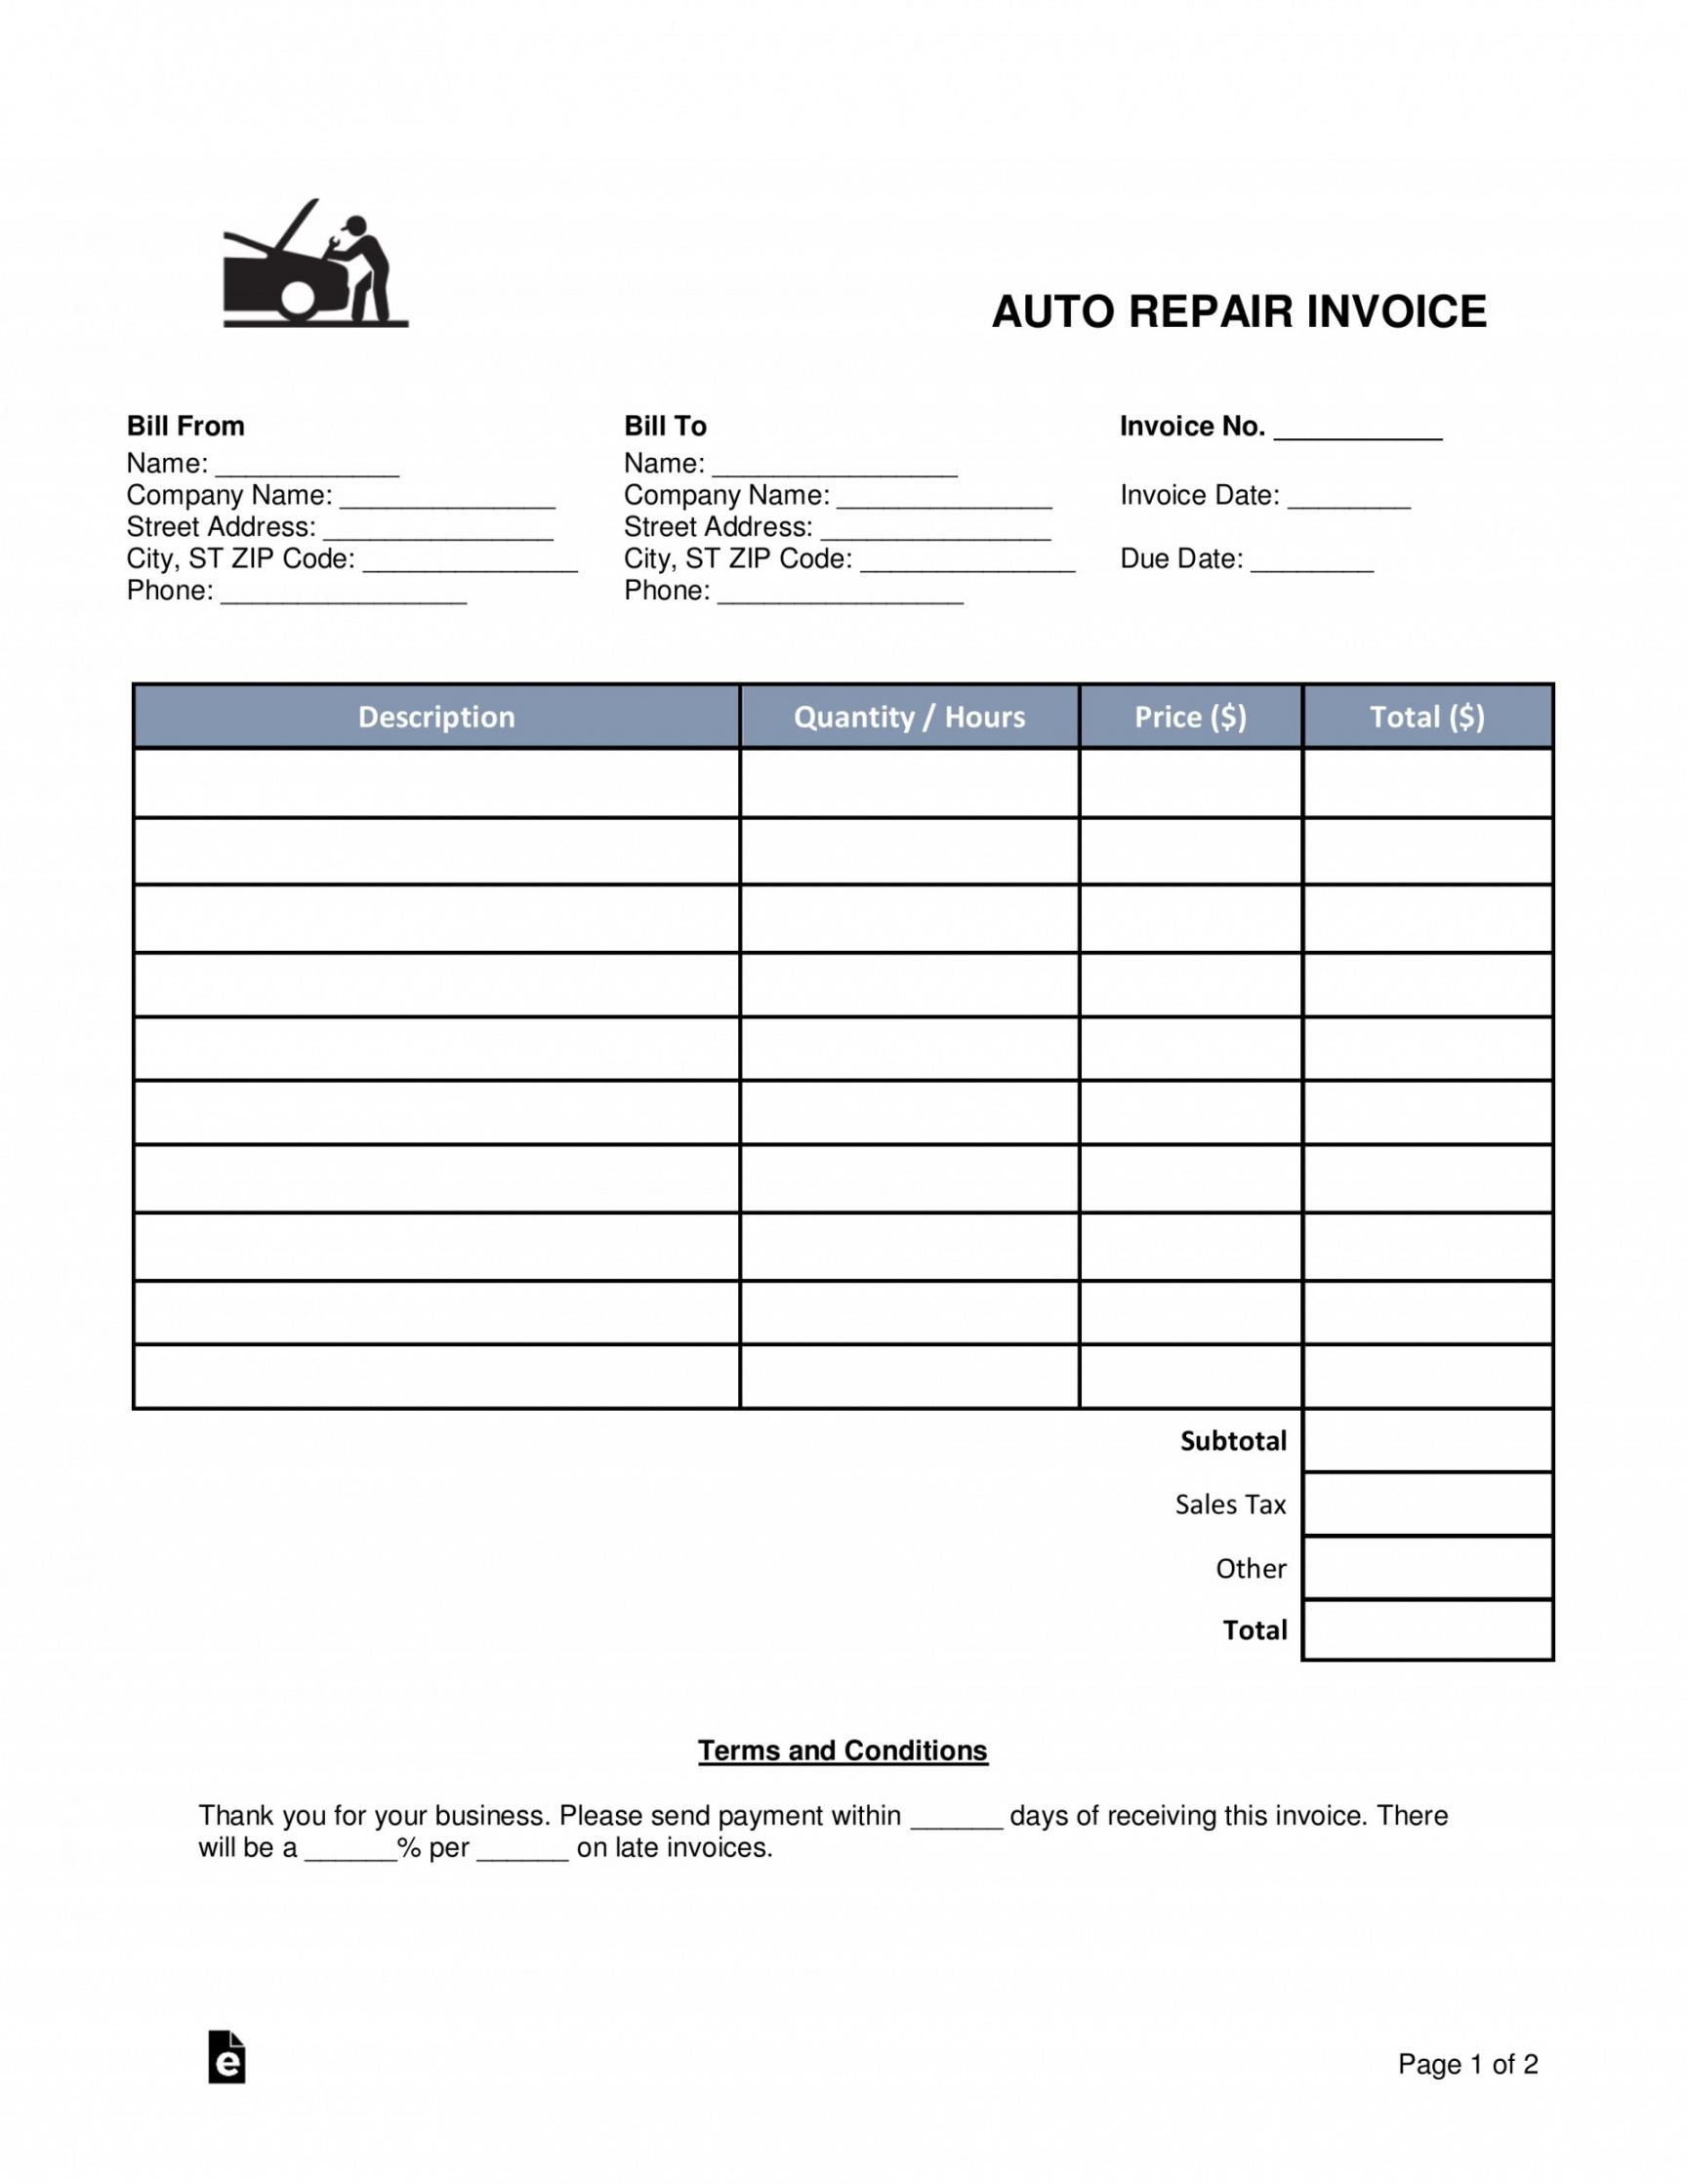 auto repair invoice templates ~ addictionary automotive repair estimate template example